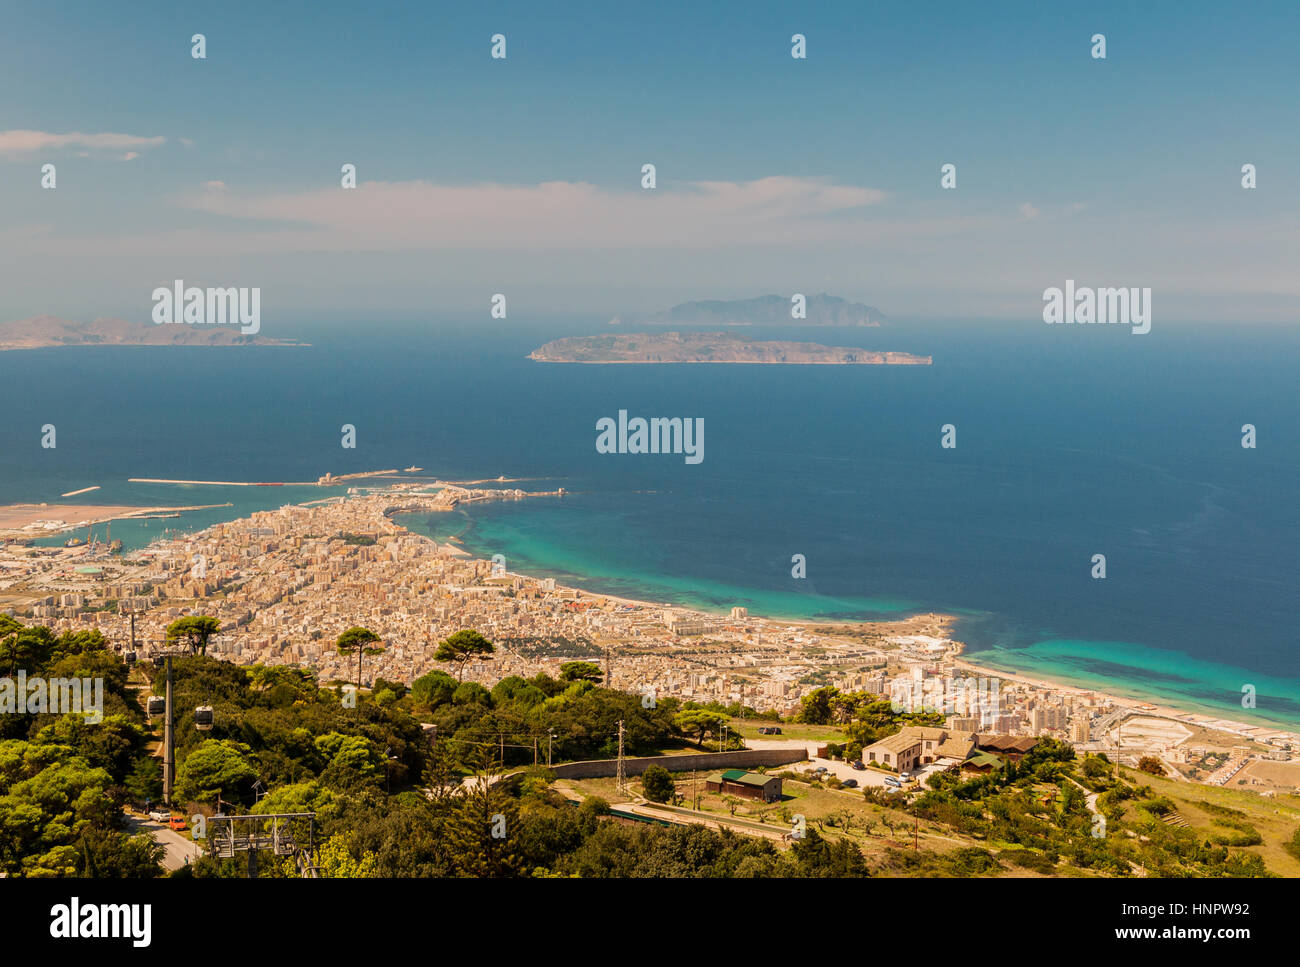 Spiaggia di erice immagini e fotografie stock ad alta risoluzione - Alamy